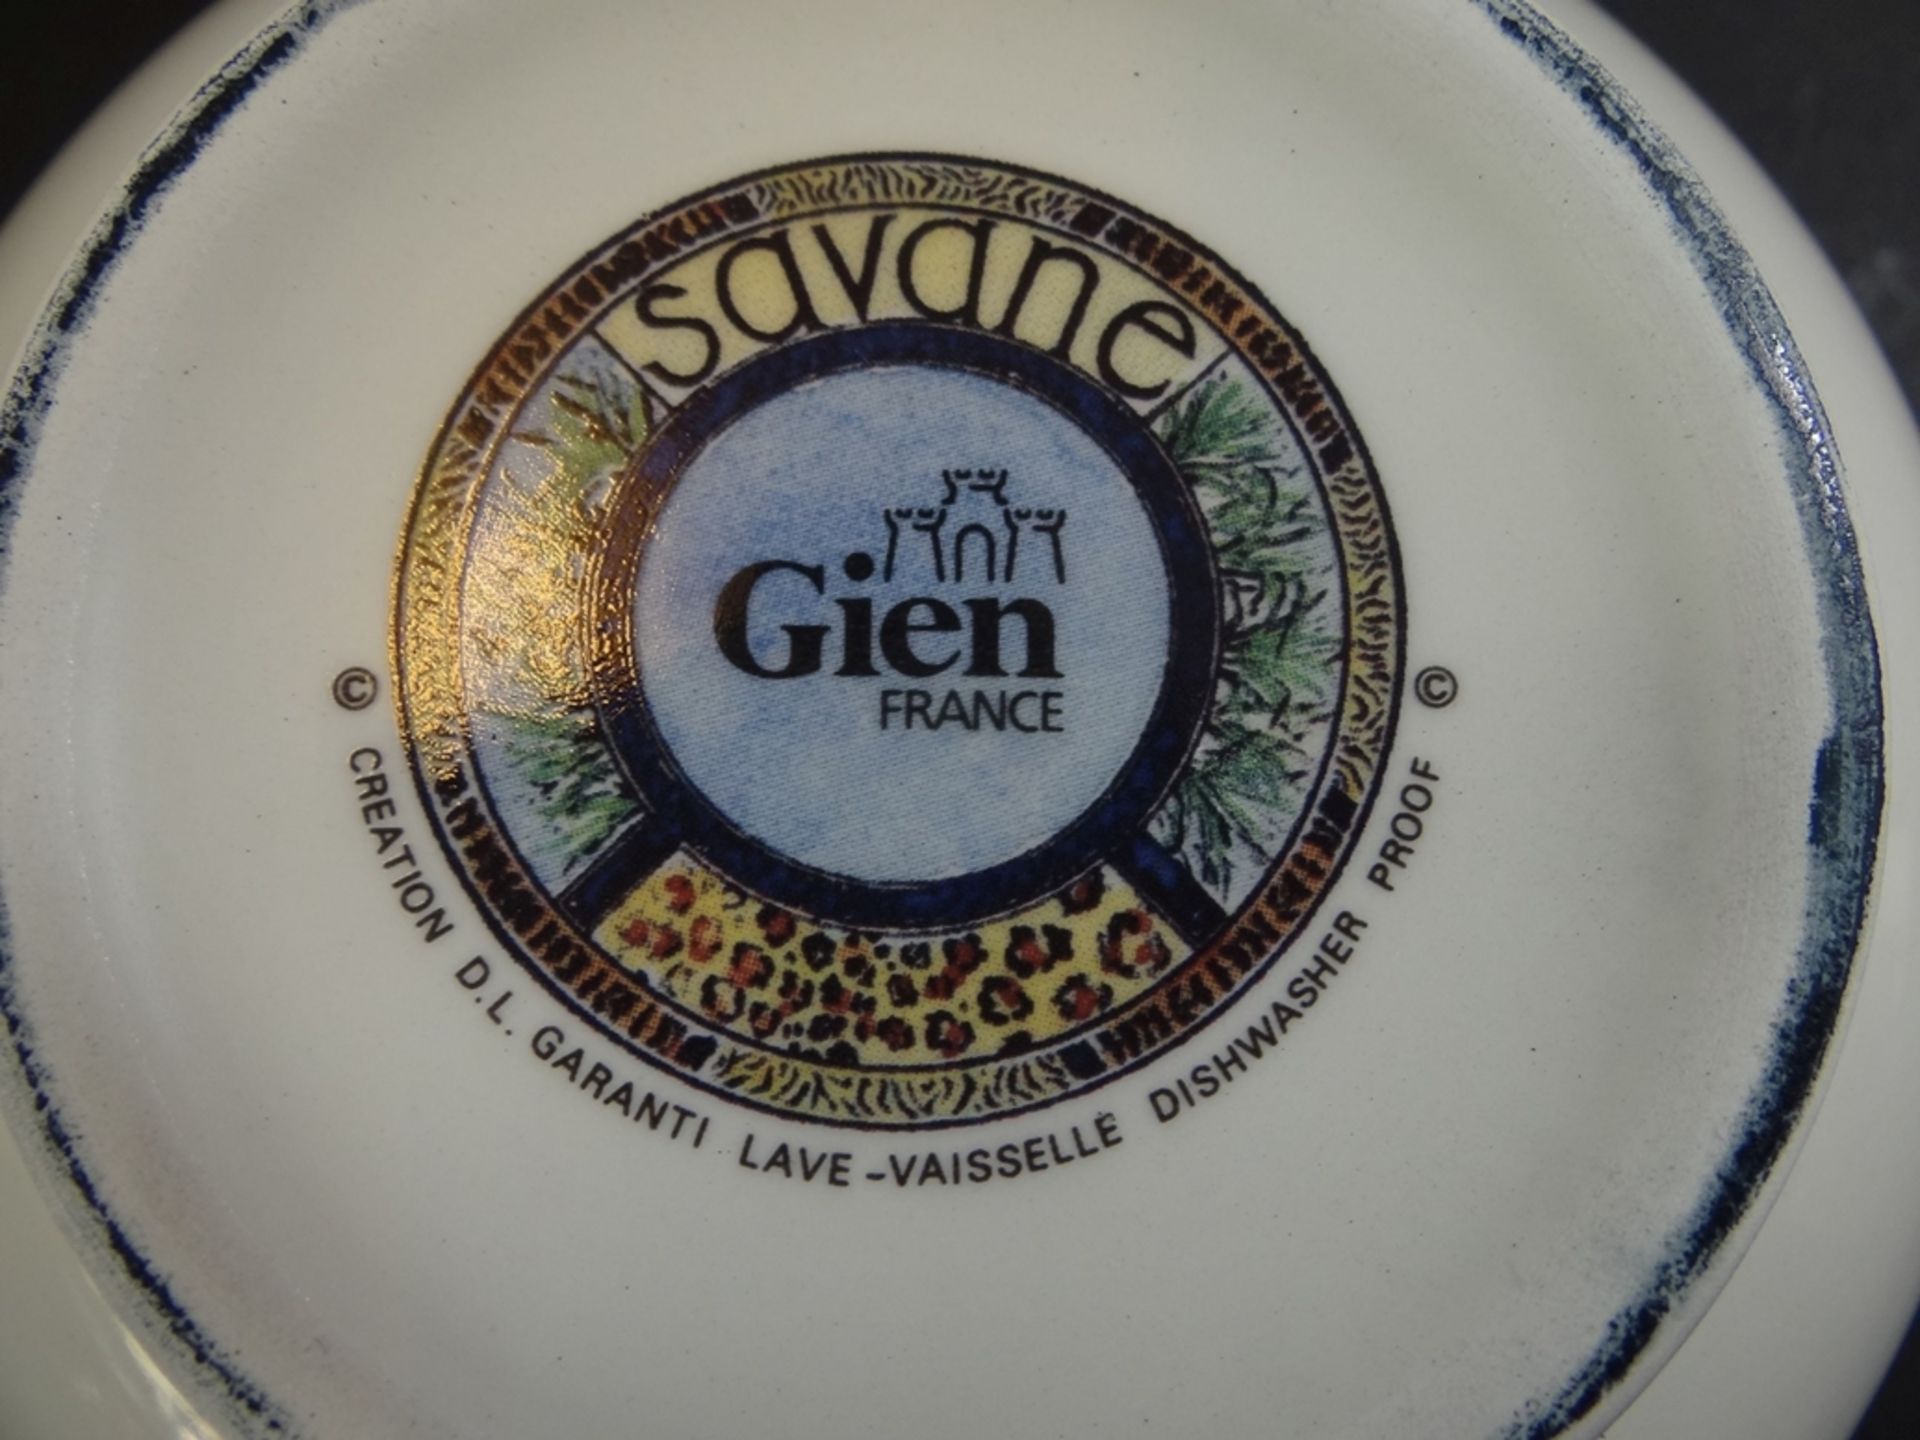 6 Schalen "Gien" France, Dekor Savane, neu in OVP - Bild 7 aus 7